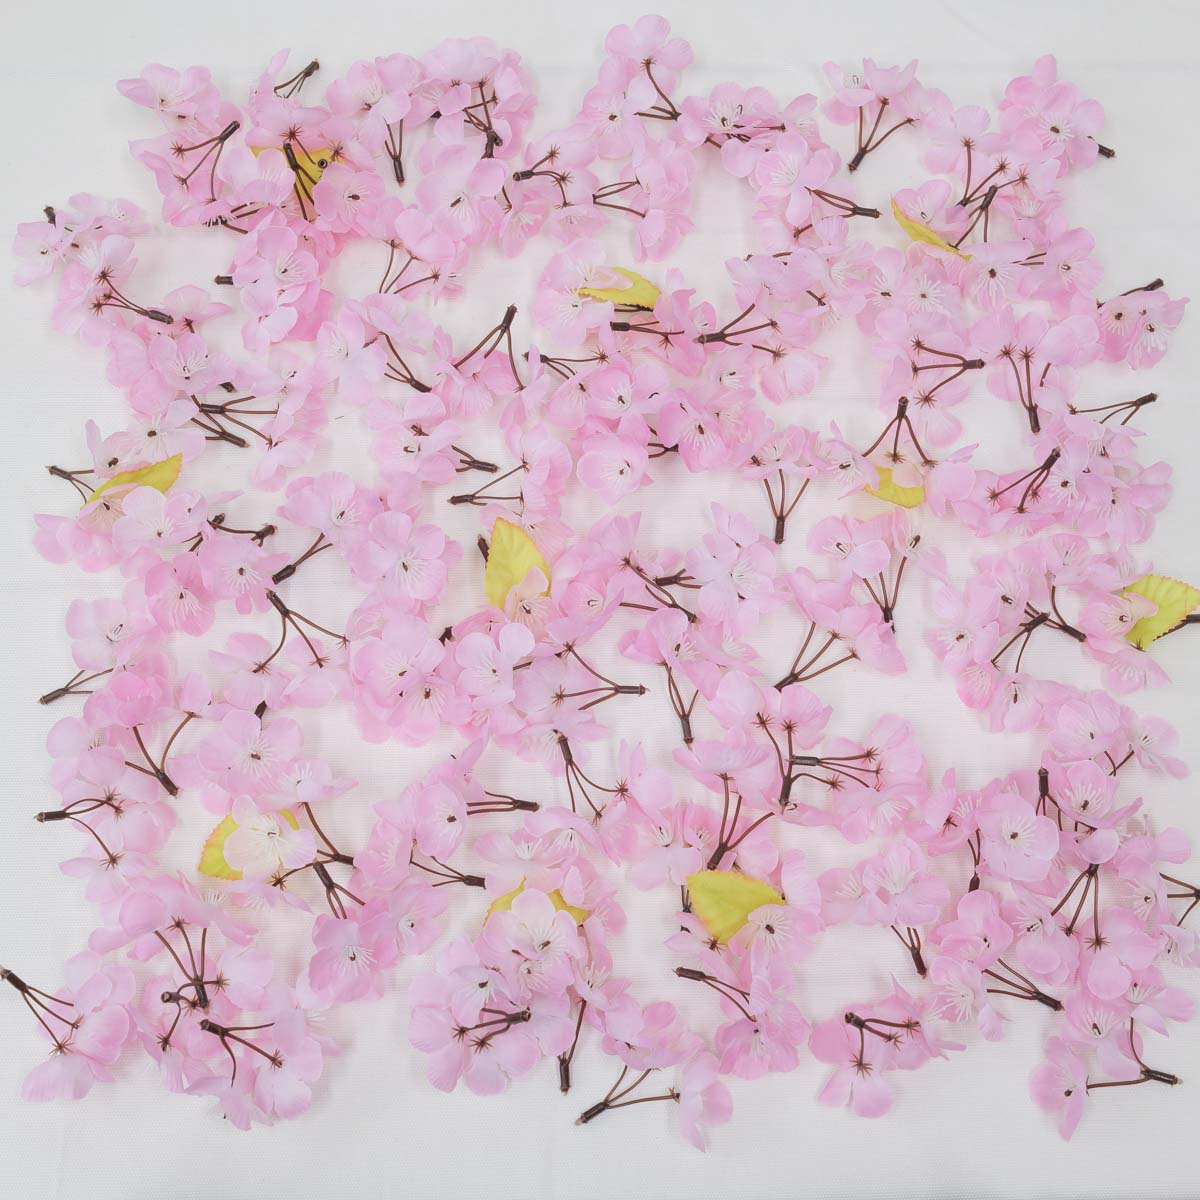 조화 봄 벚꽃잎 꽃송이 300개 1봉지, 실크플라워 조화꽃 실내장식 상품 다중이미지 썸네일